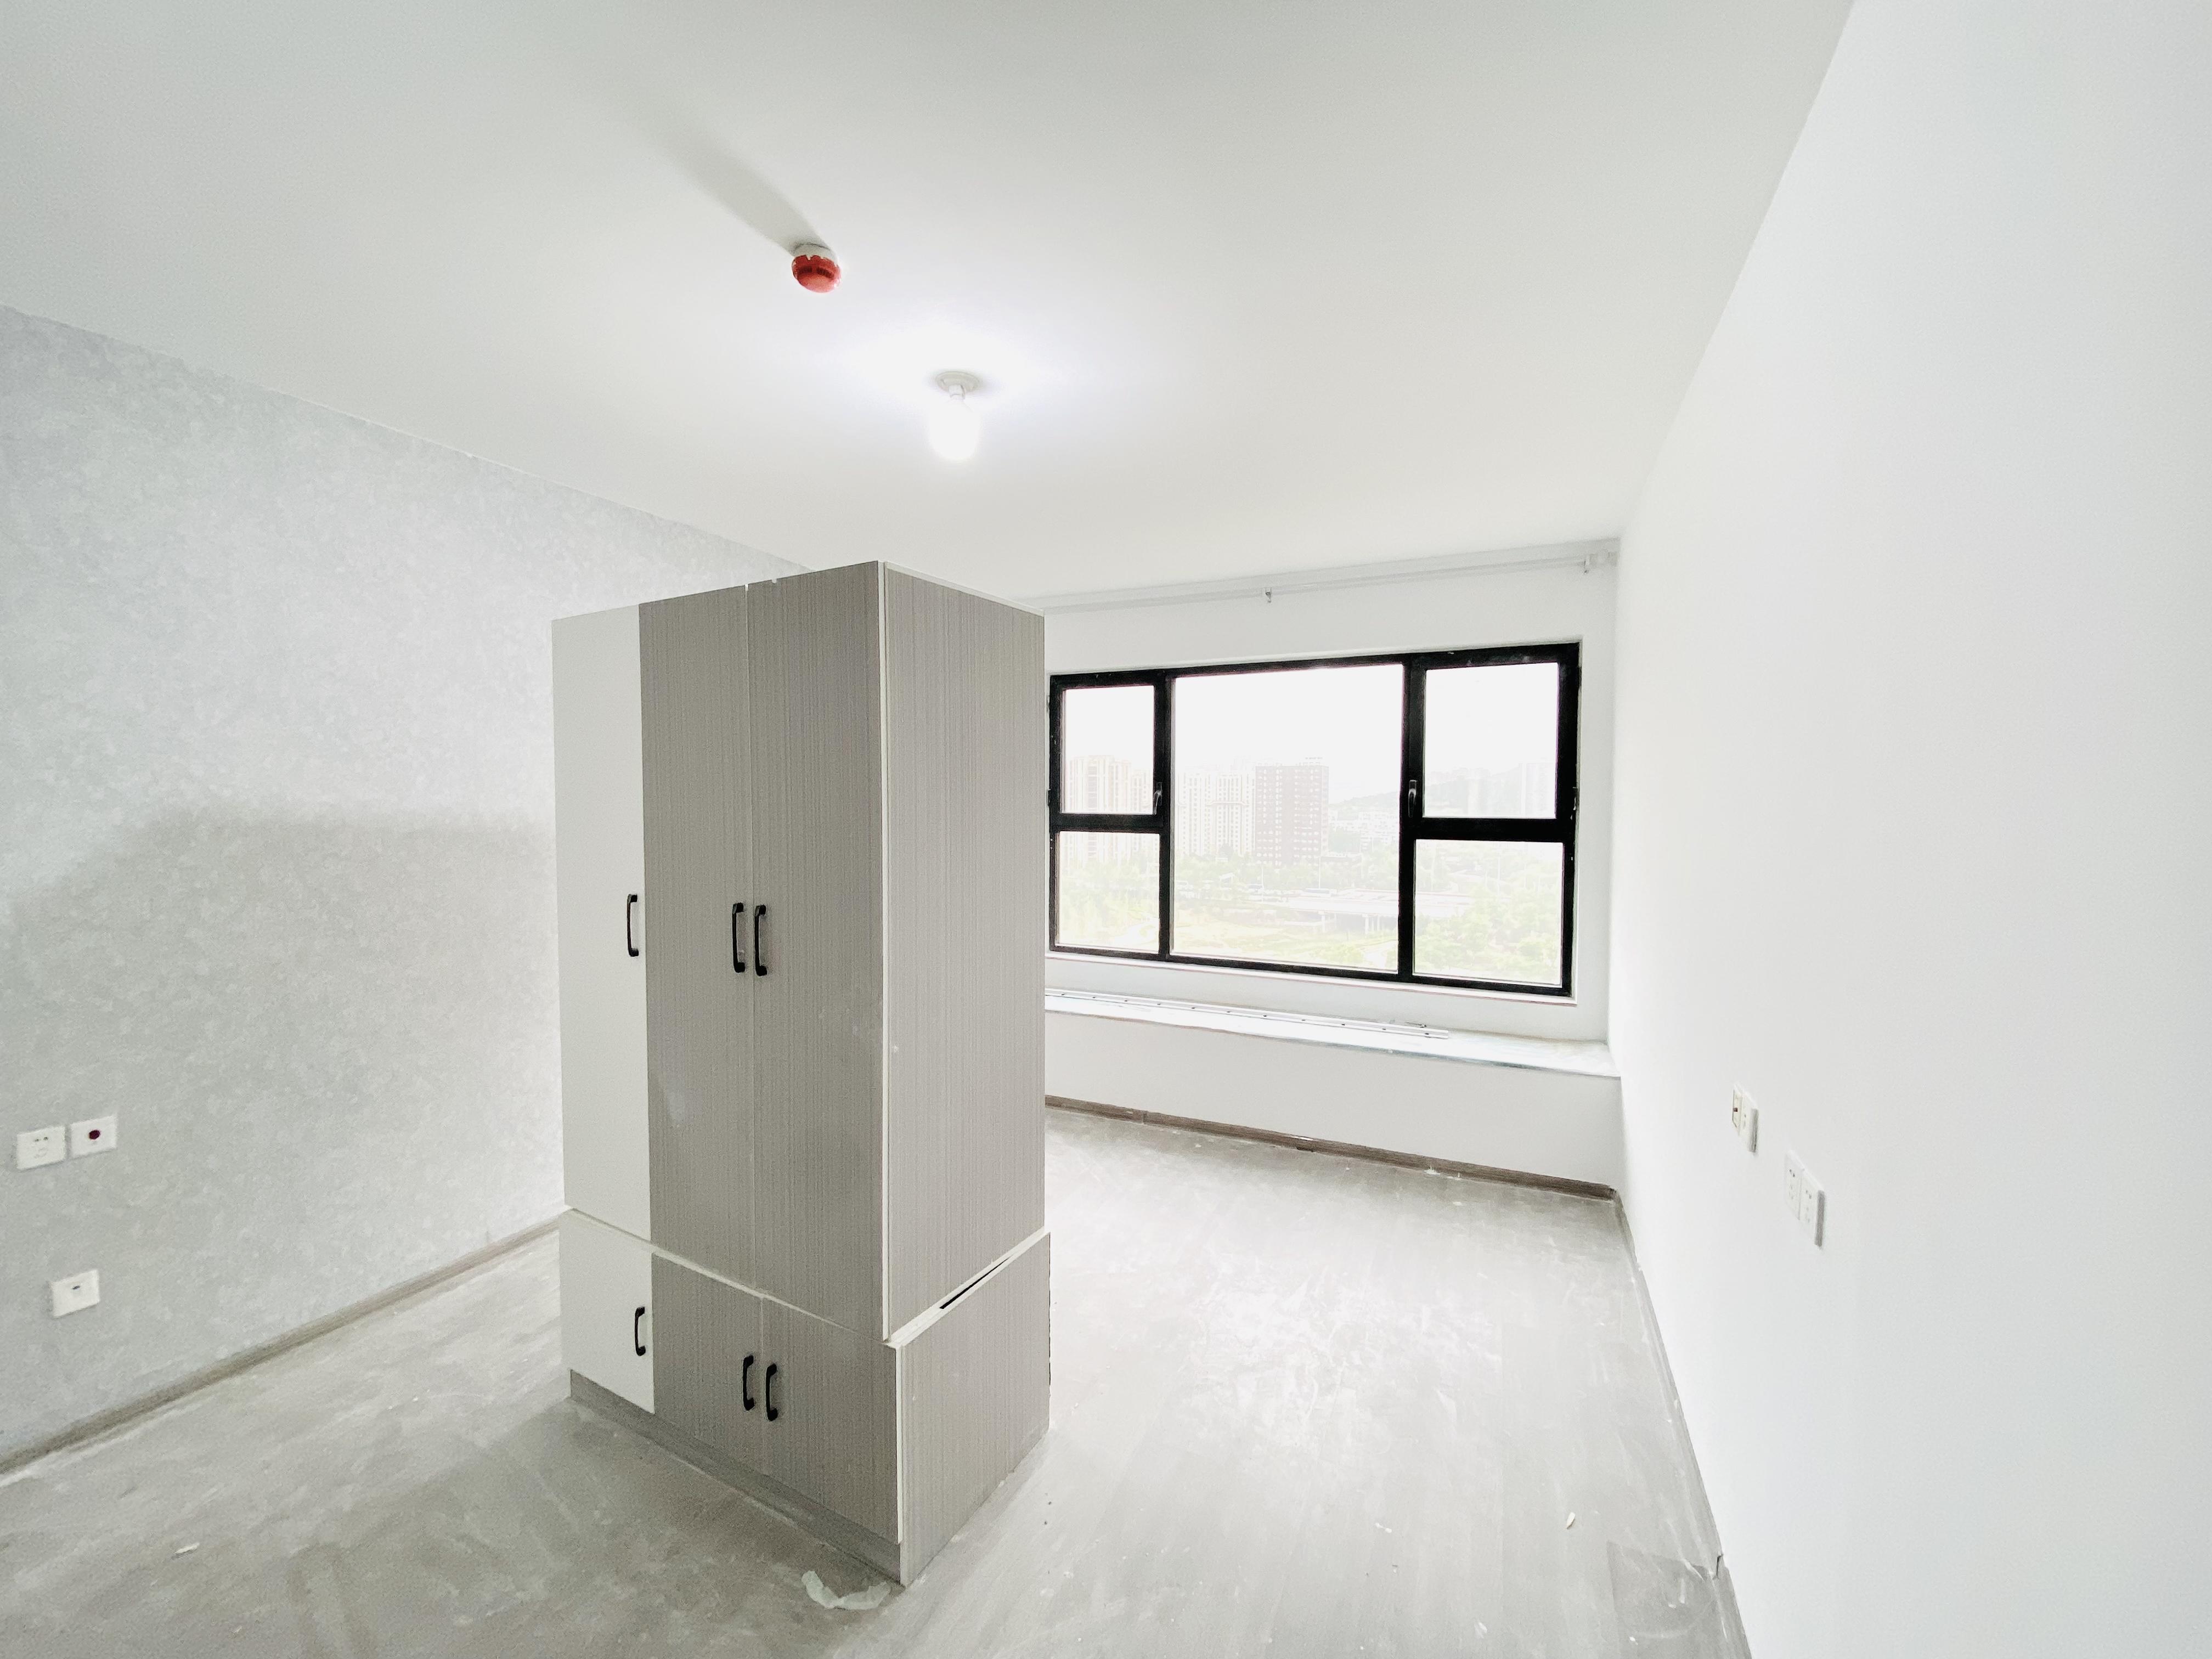 中新国际西城六区,4室2厅,230万,满两年,有电梯